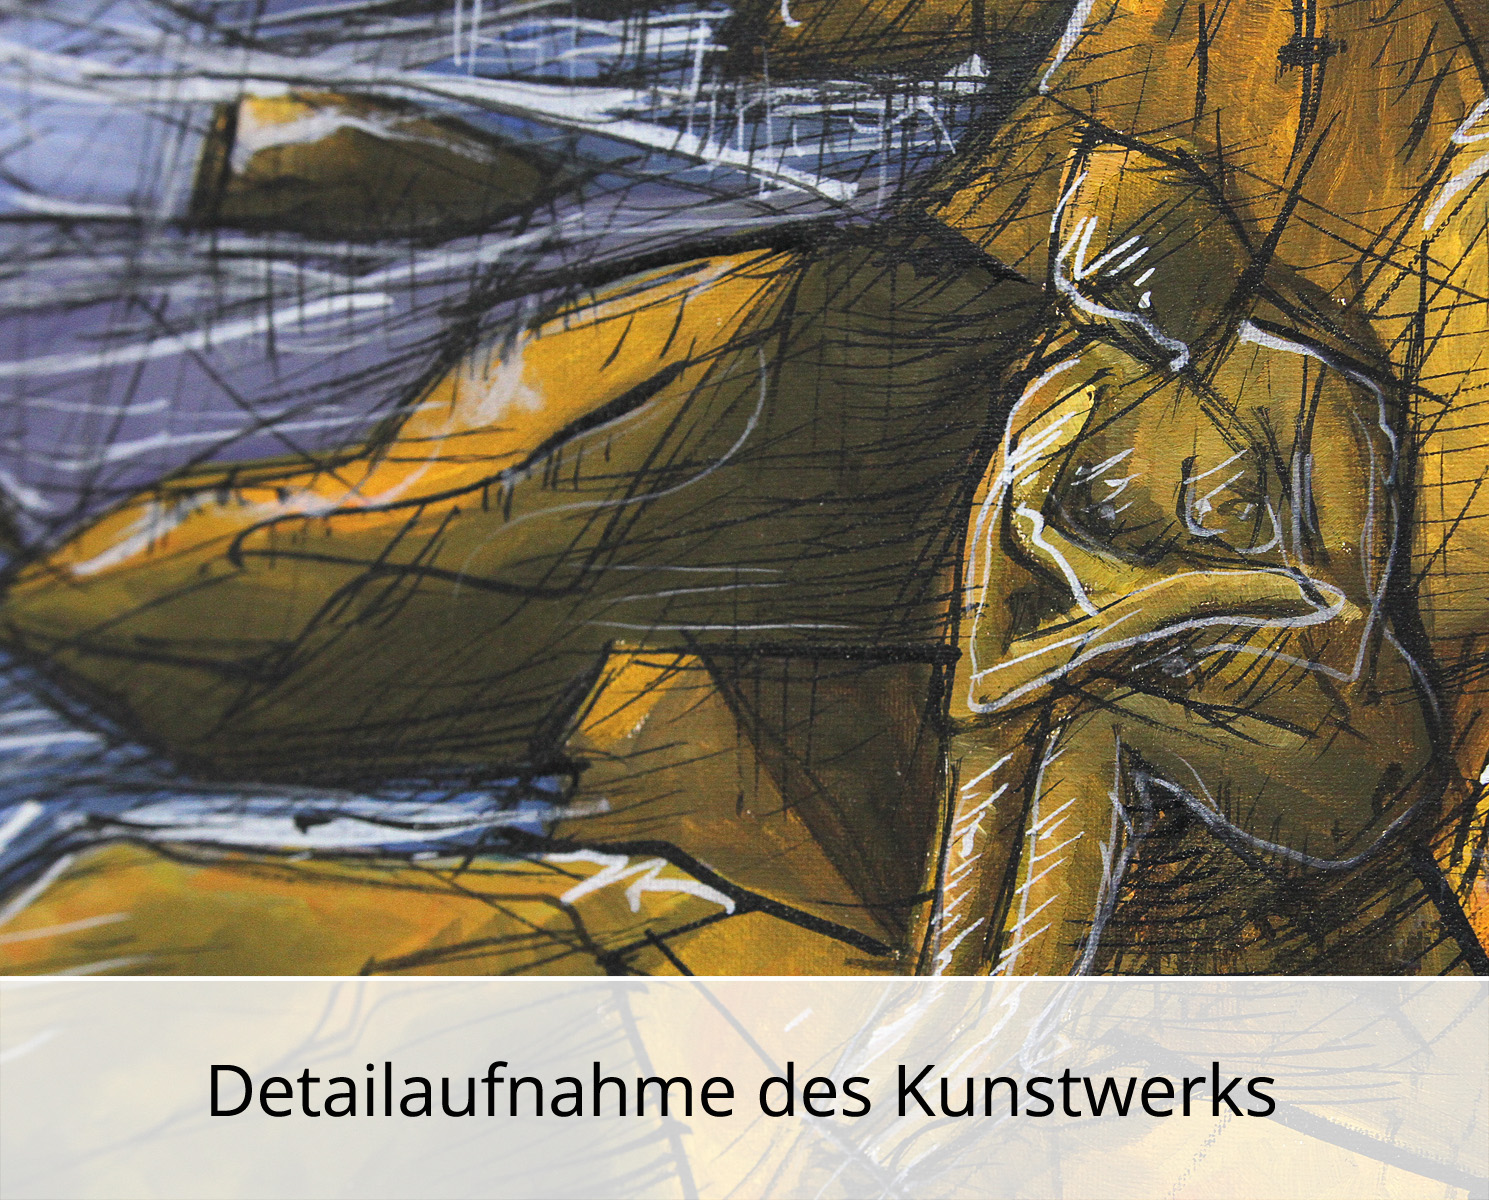 C. Blechschmidt: "Einsam am Meer", Original/Unikat, zeitgenössisches Ölgemälde